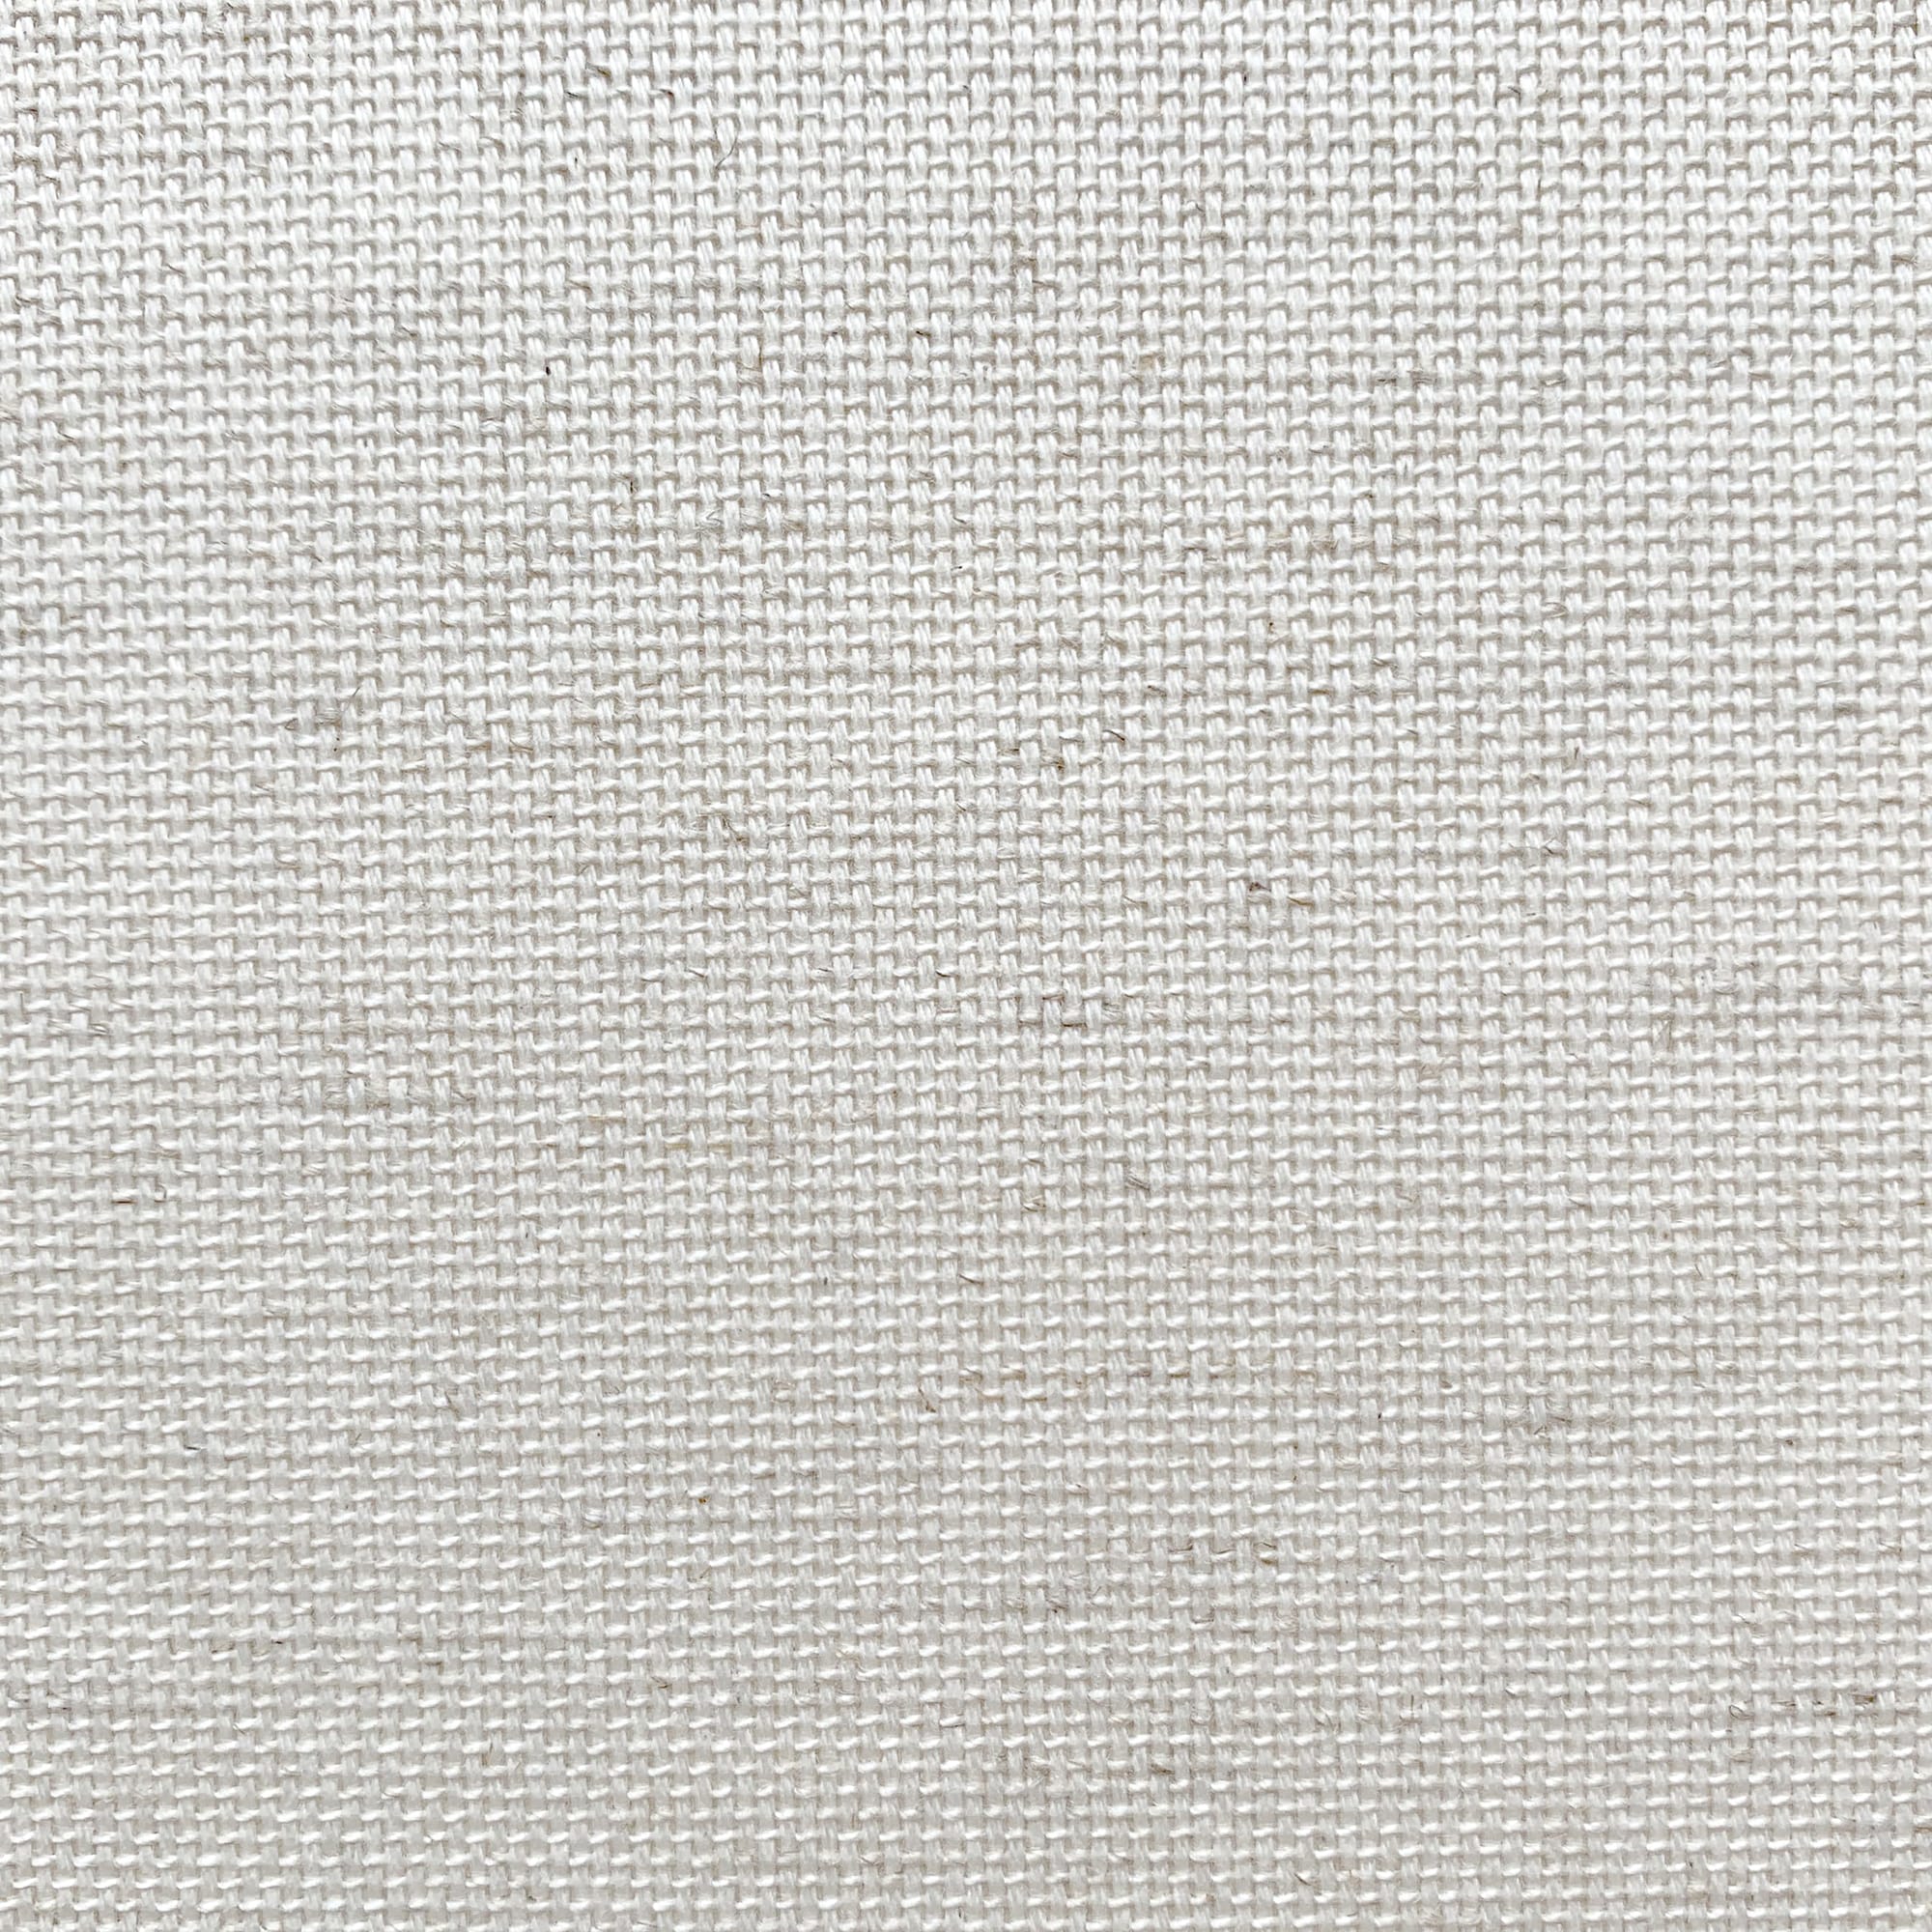 織物壁紙 綿麻 W920mm×L5m WL-WP014-01-G141 布ならではの暖かみがあります